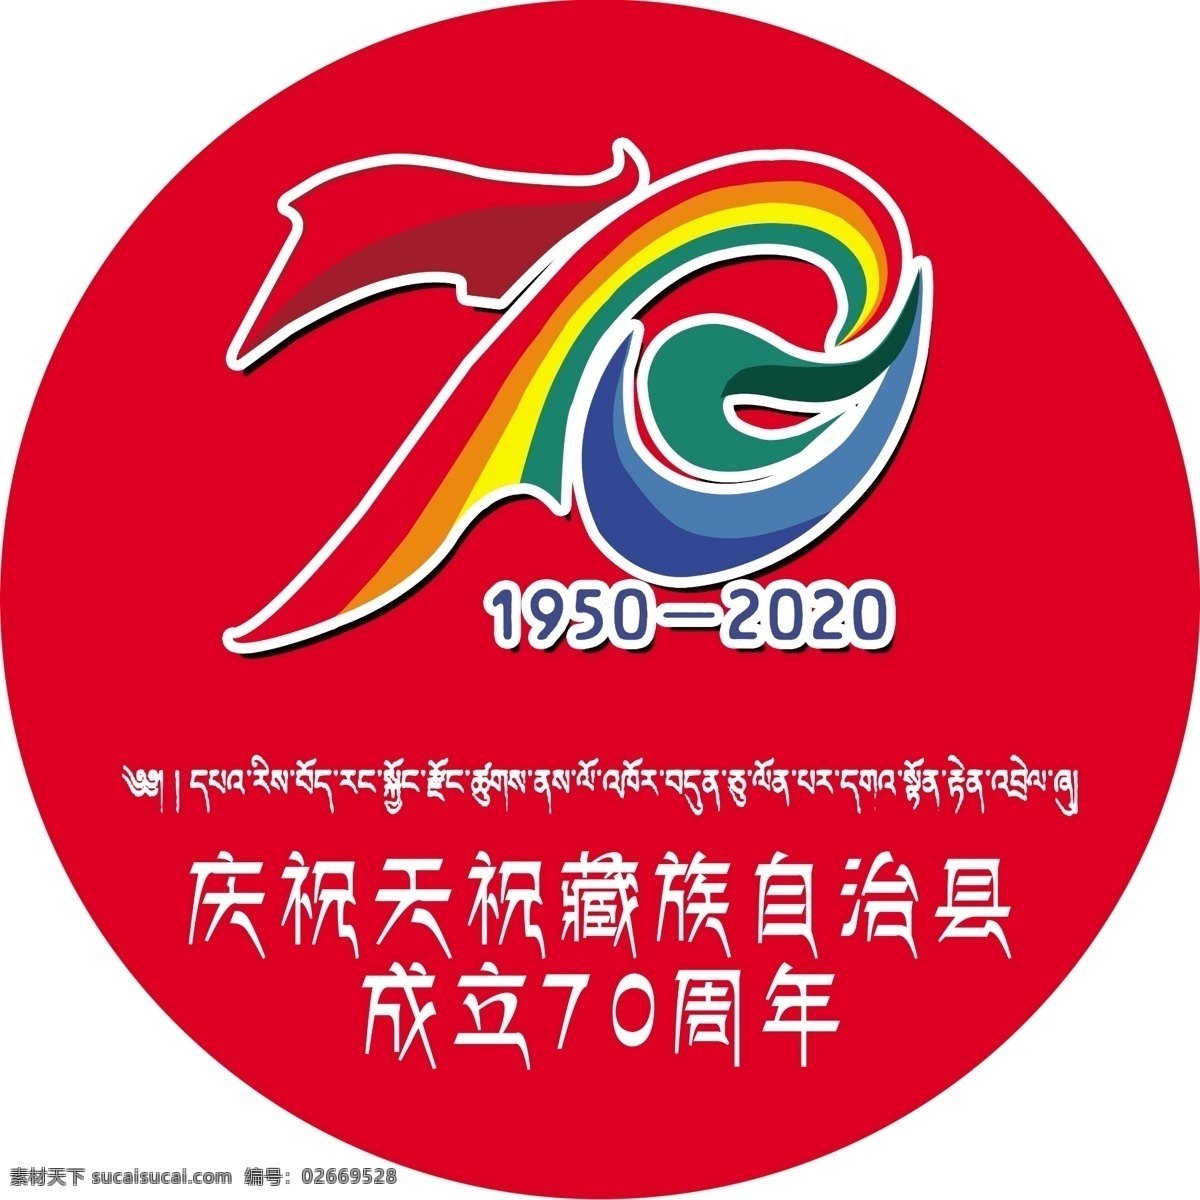 天祝藏族自治县 成立 周年 天祝 藏族自治县 成立70周年 藏族 标志